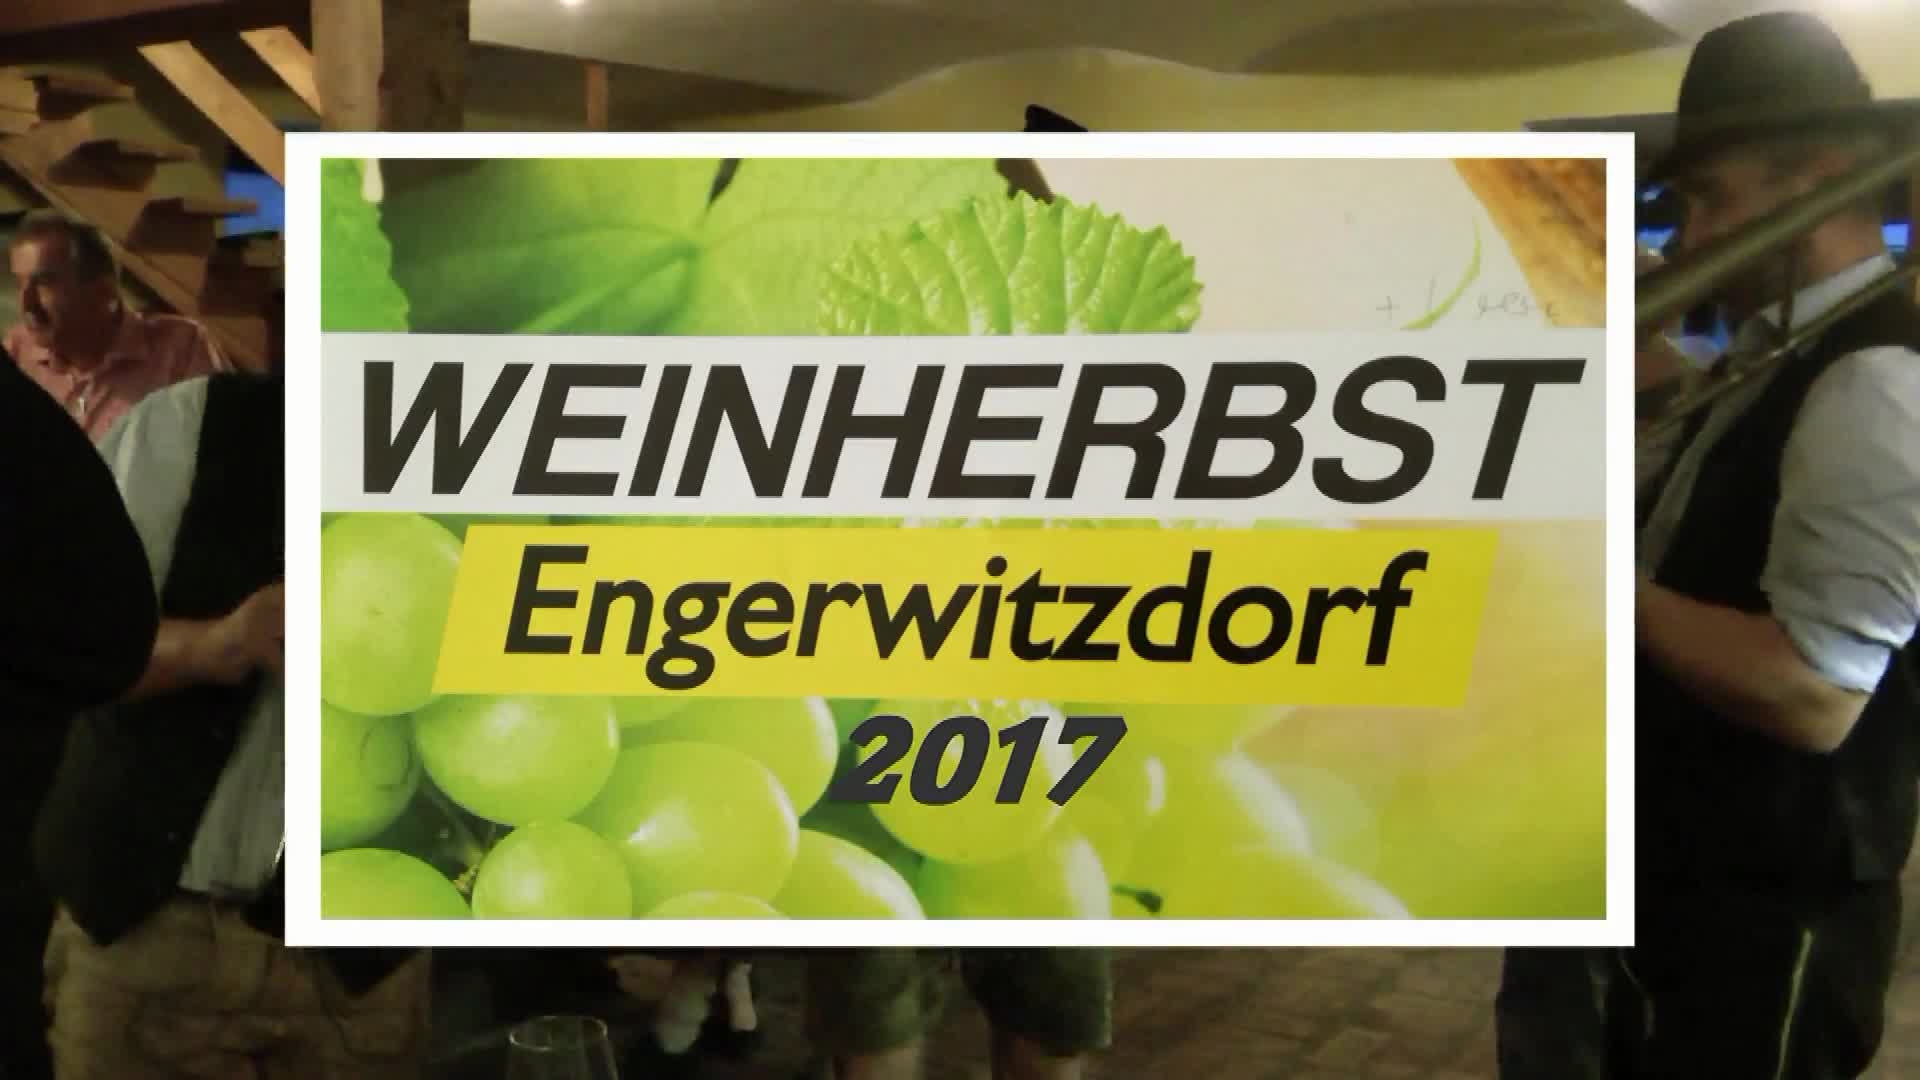 Weinherbst Engerwitzdorf 2017